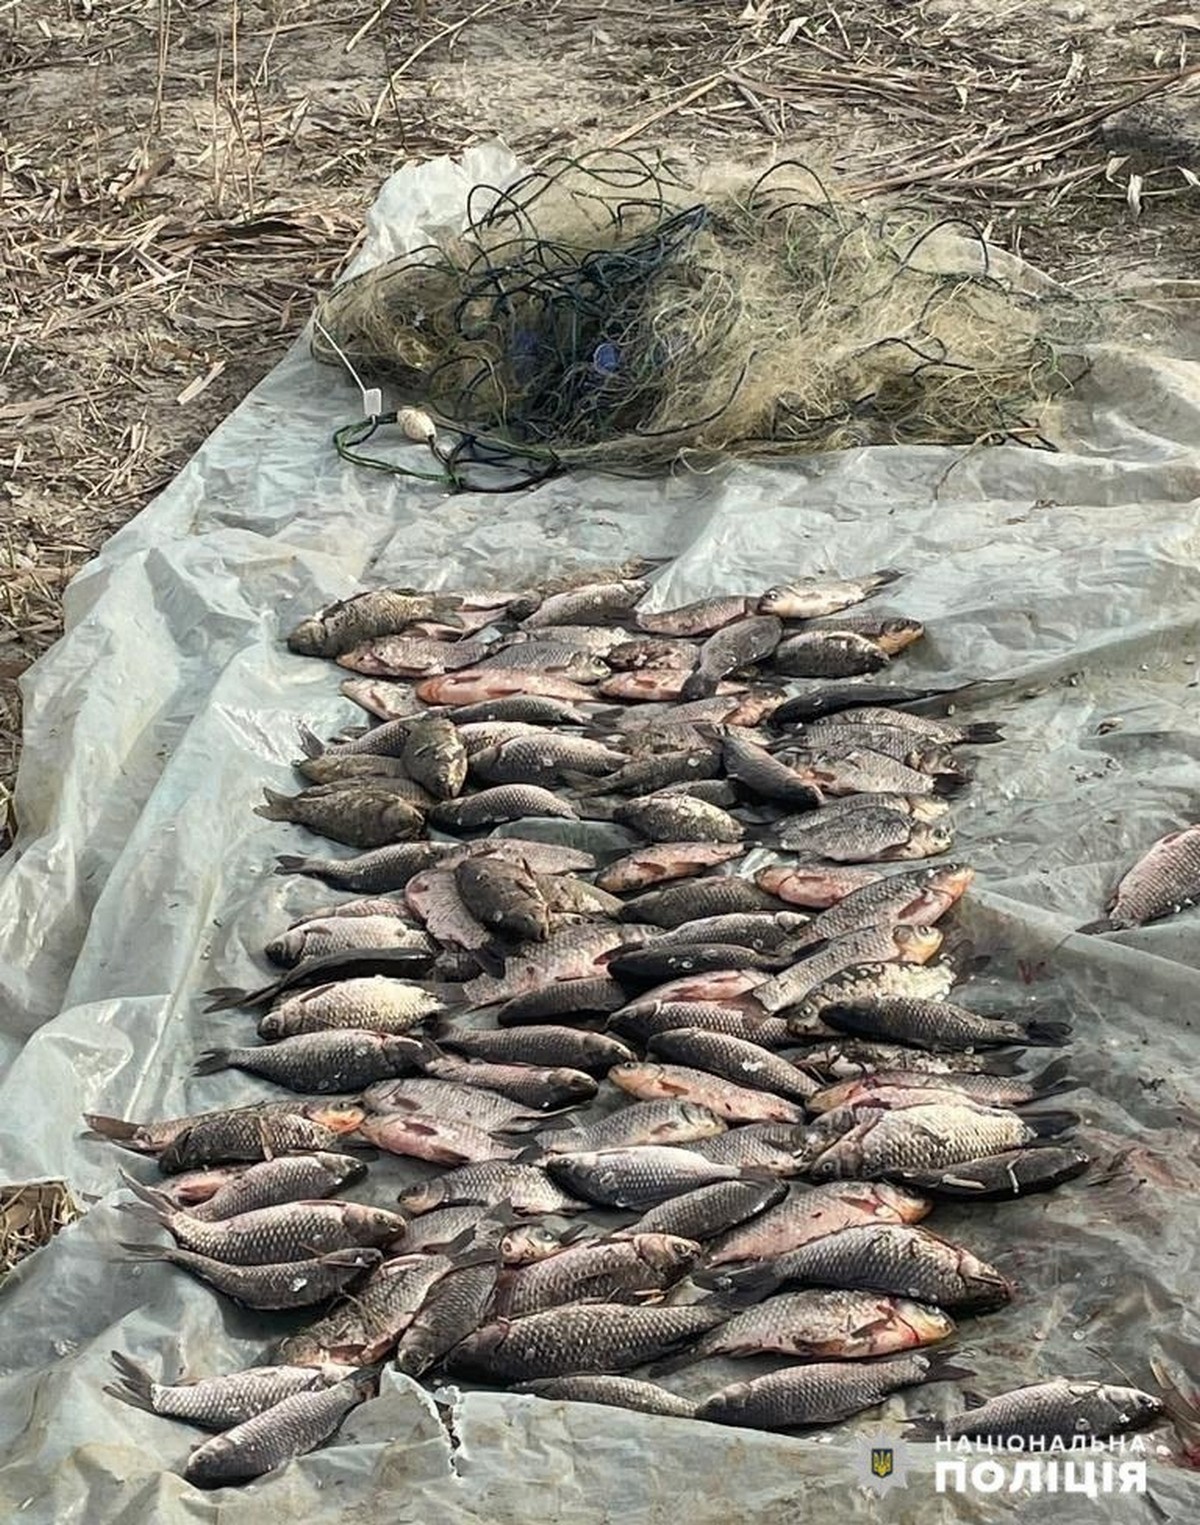 Наловили риби на понад 300 тисяч: у Нікополььскому районі викрили браконьєрів